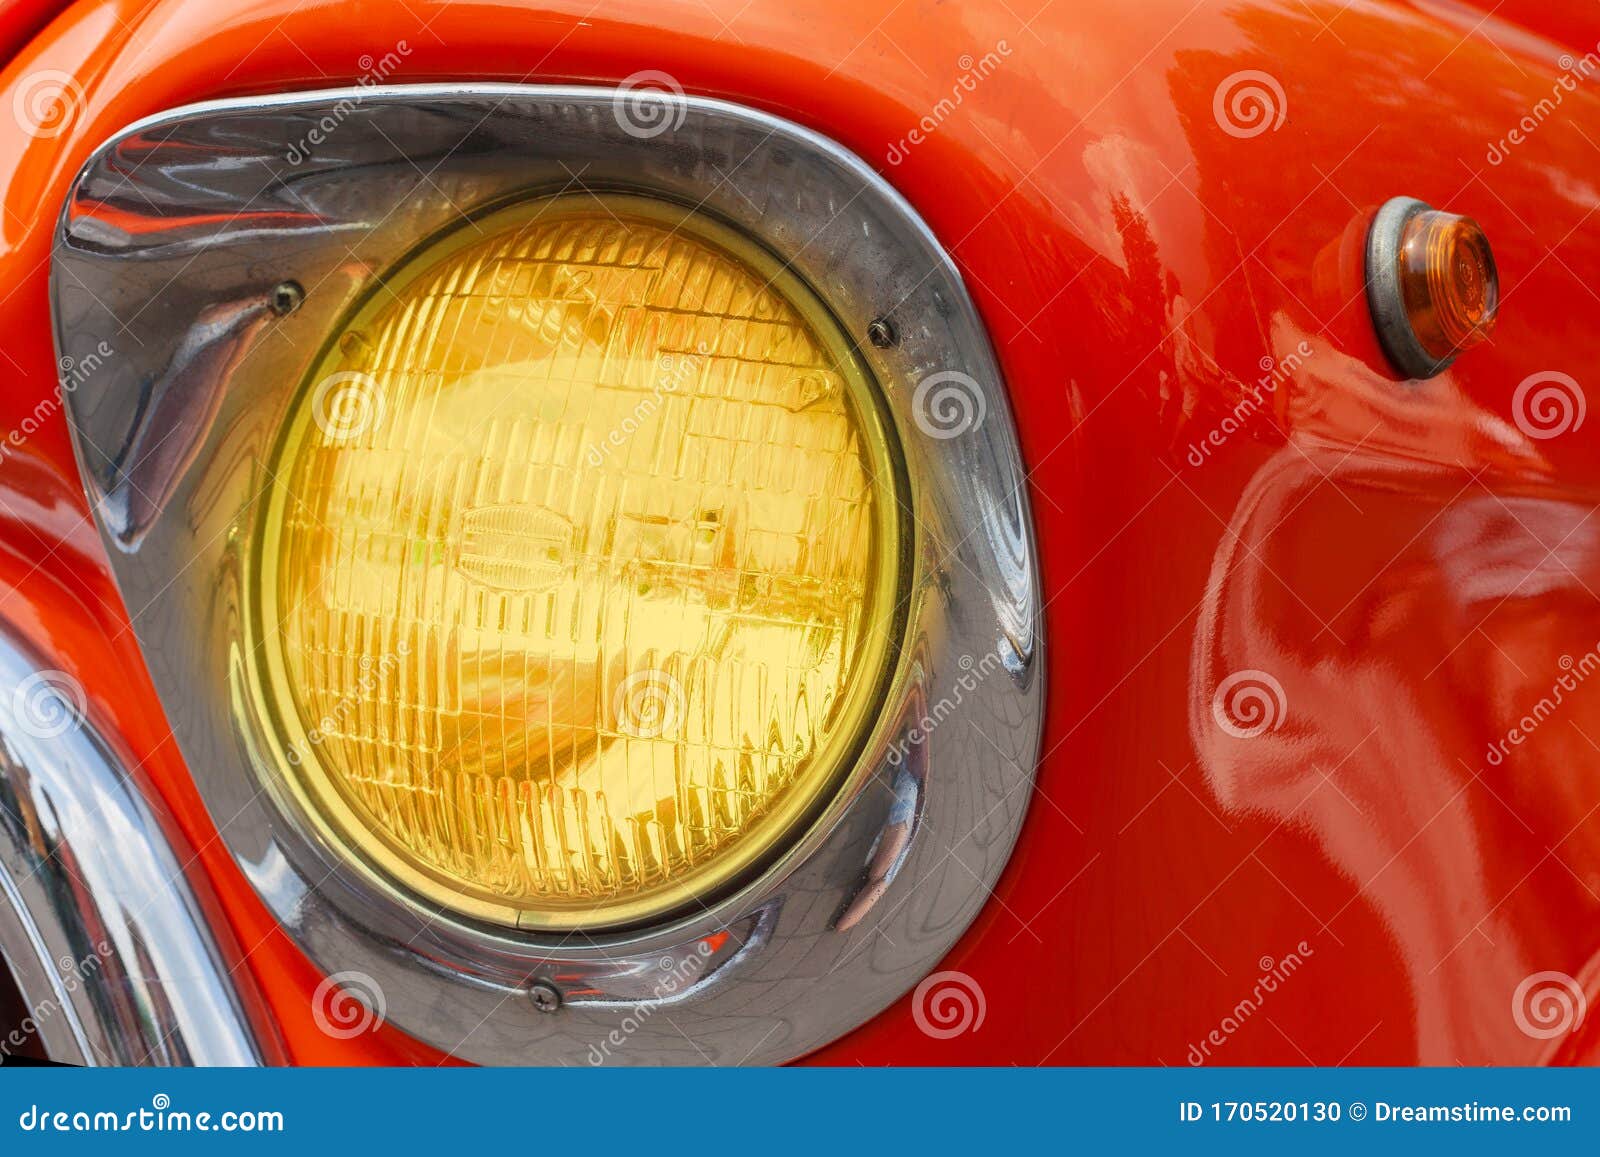 https://thumbs.dreamstime.com/z/scheinwerfer-auf-orange-retro-auto-dem-runden-rampenlicht-der-orangenen-vorder-scheinwerferautos-licht-170520130.jpg